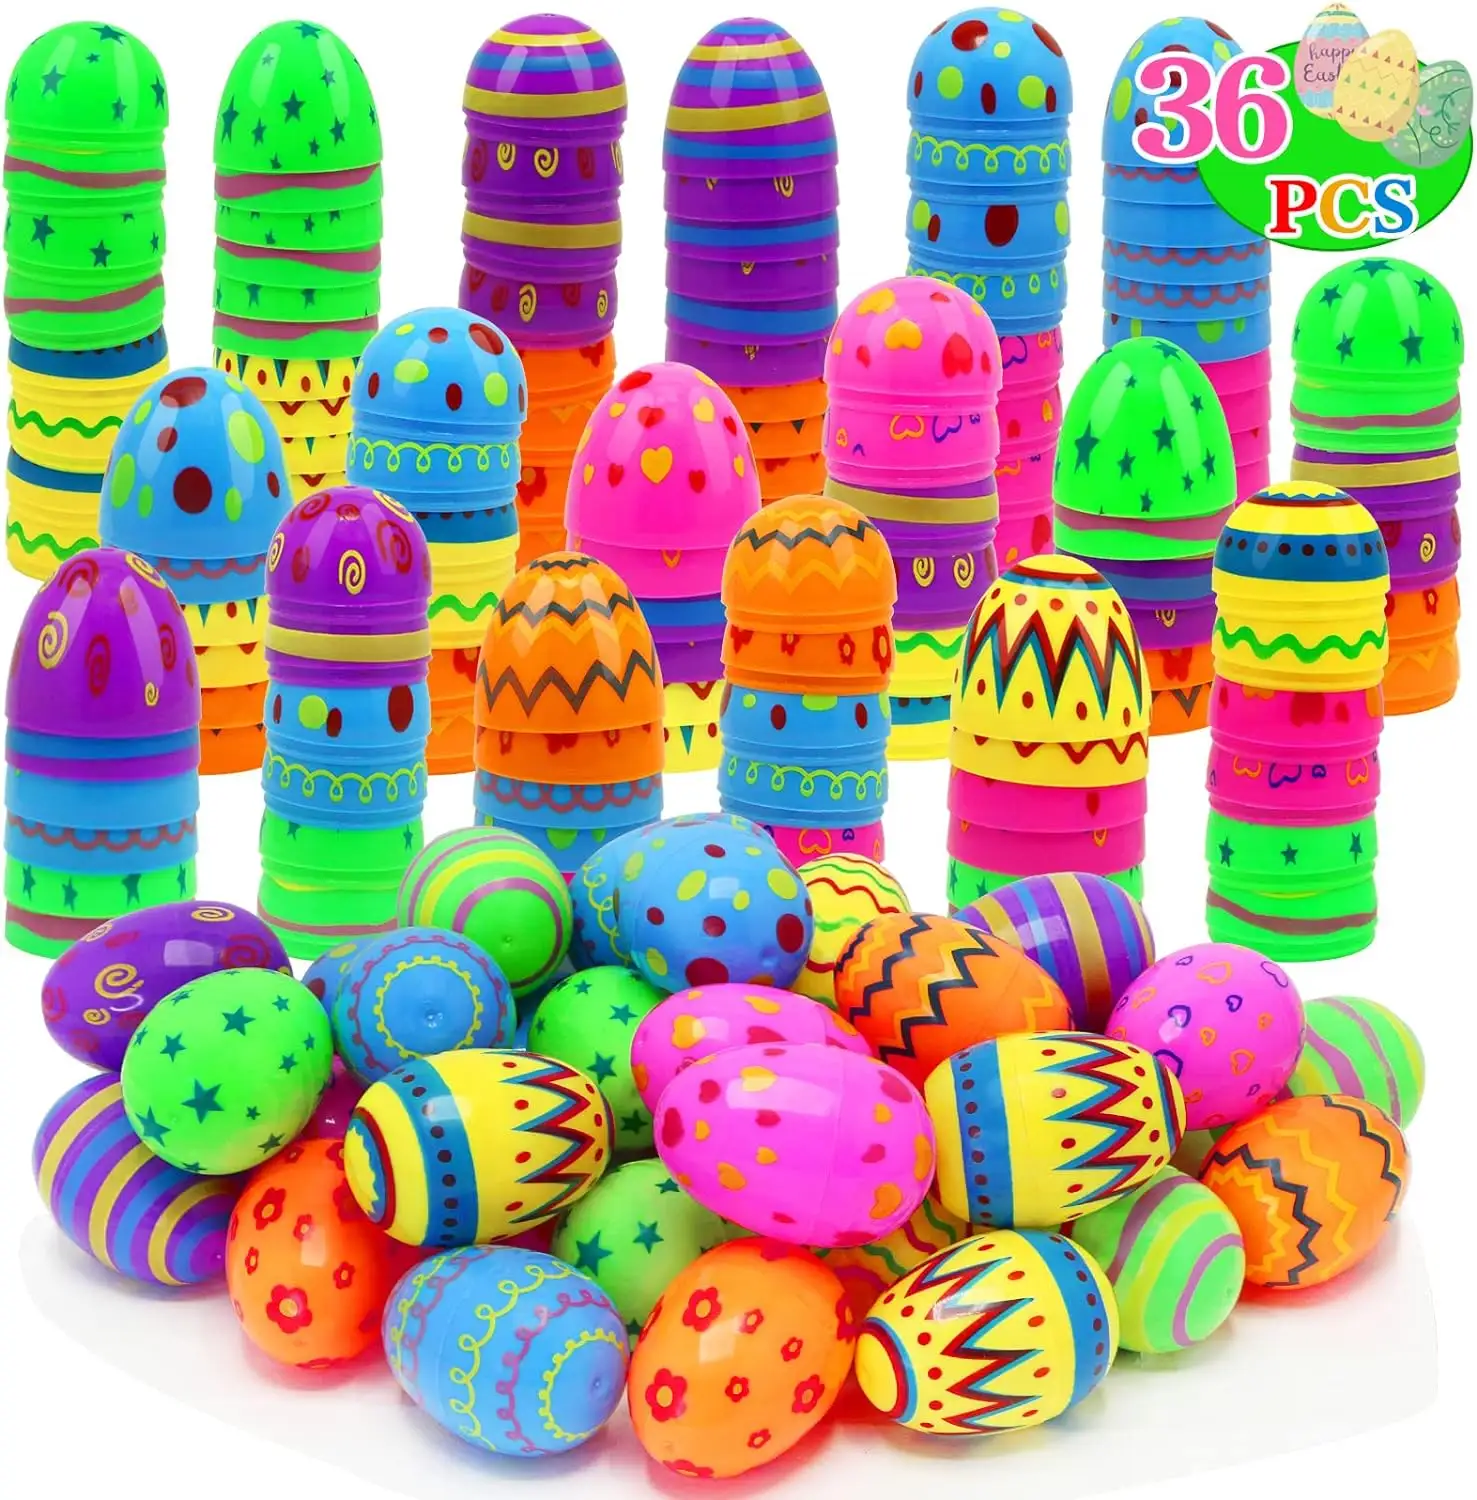 Lễ Hội phục sinh đầy màu sắc ngày lễ trang trí tiệc cung cấp đồ chơi trẻ em trẻ em trống rỗng nhỏ Trứng phục sinh sơn Bộ vỏ trứng